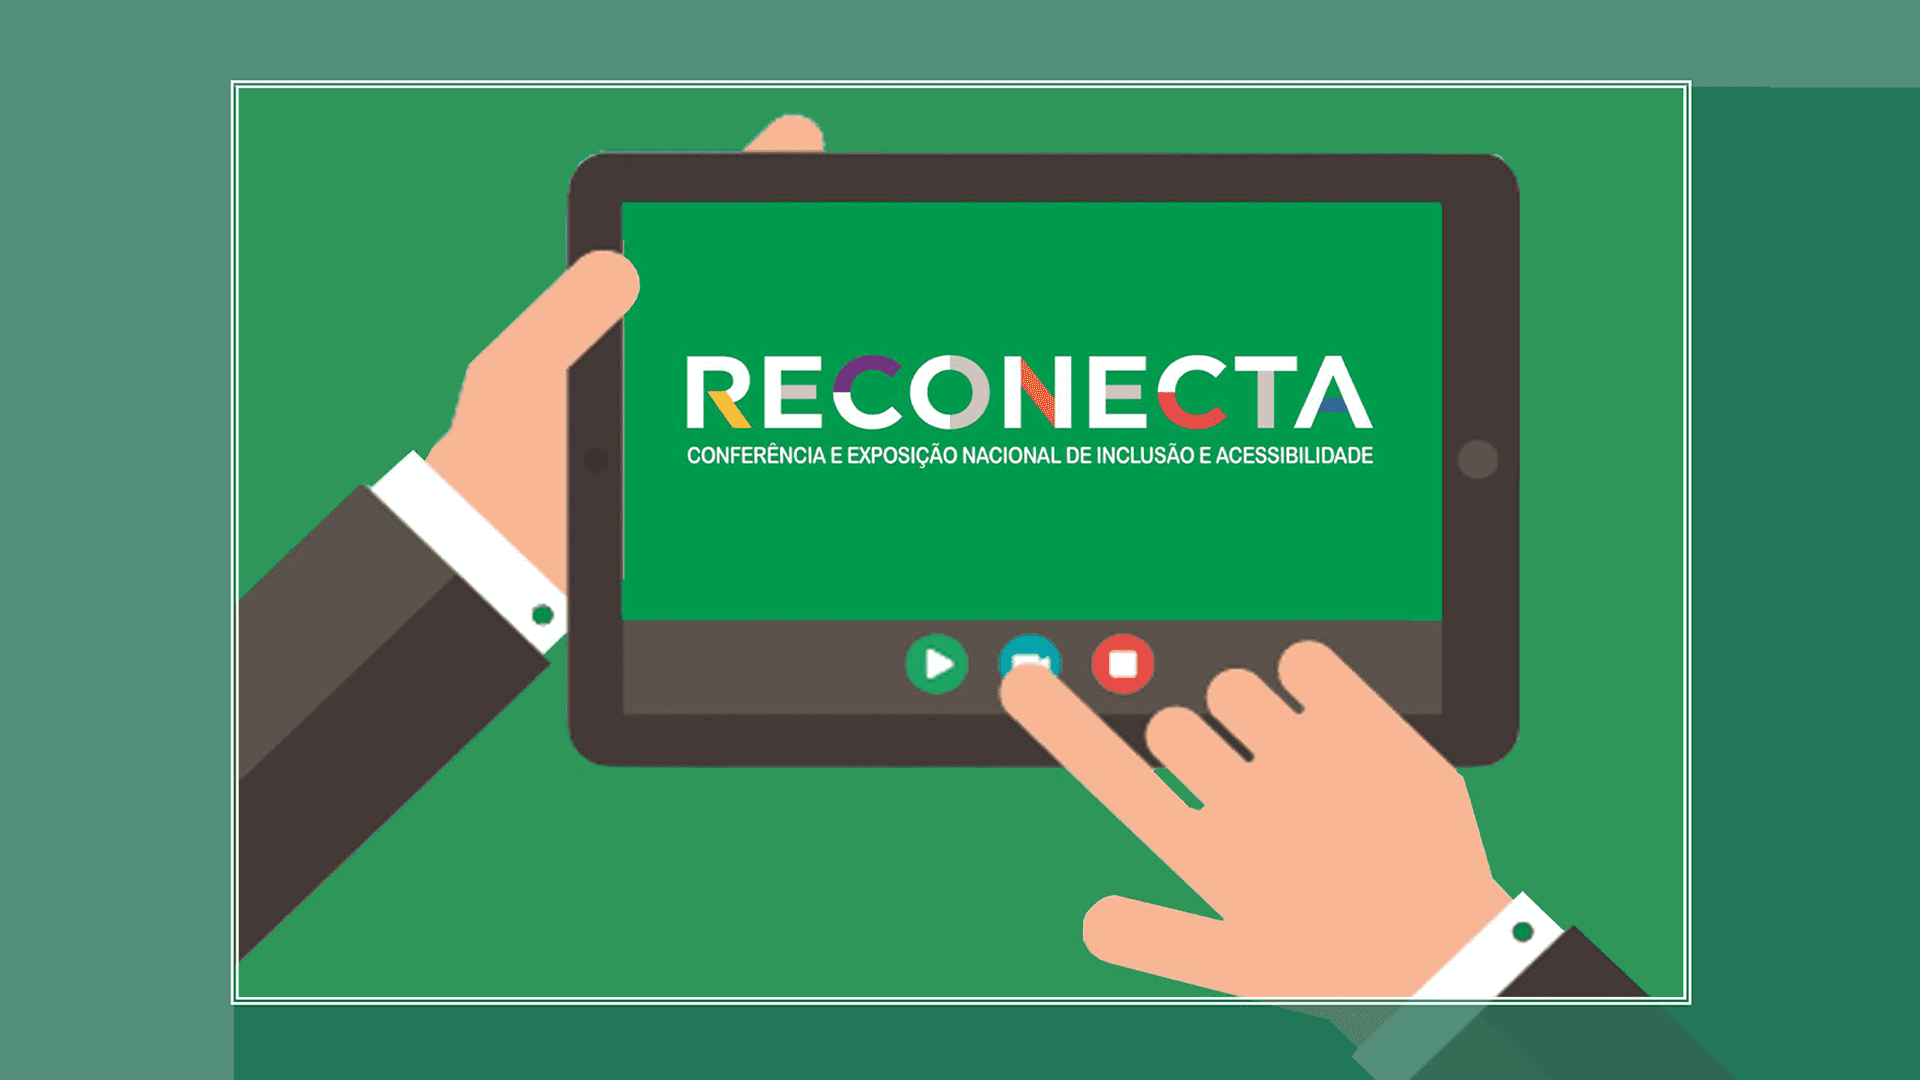 Imagem digital com fundo verde, mostra duas mãos acessando o Reconecta 2020